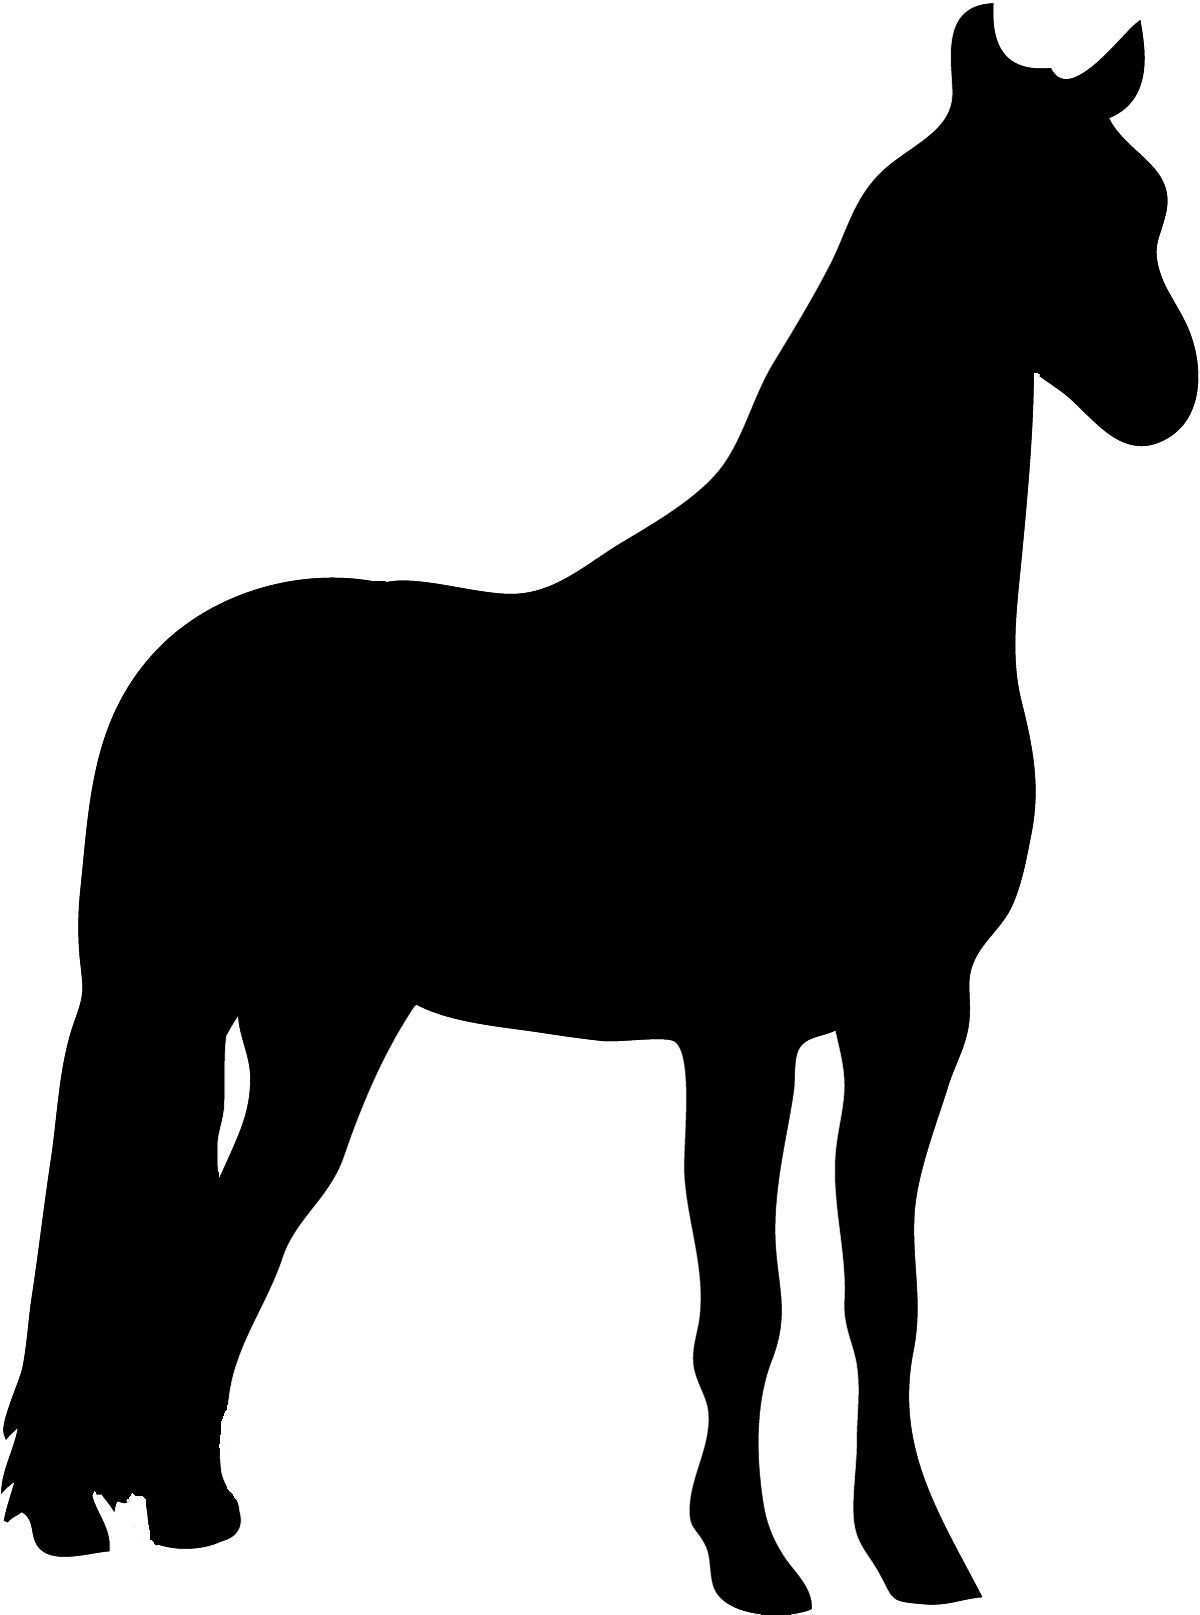 Pferde Schablonen Scherenschnitt Vorlagen Tiere Pferde Silhouette Malvorlagen Pferde